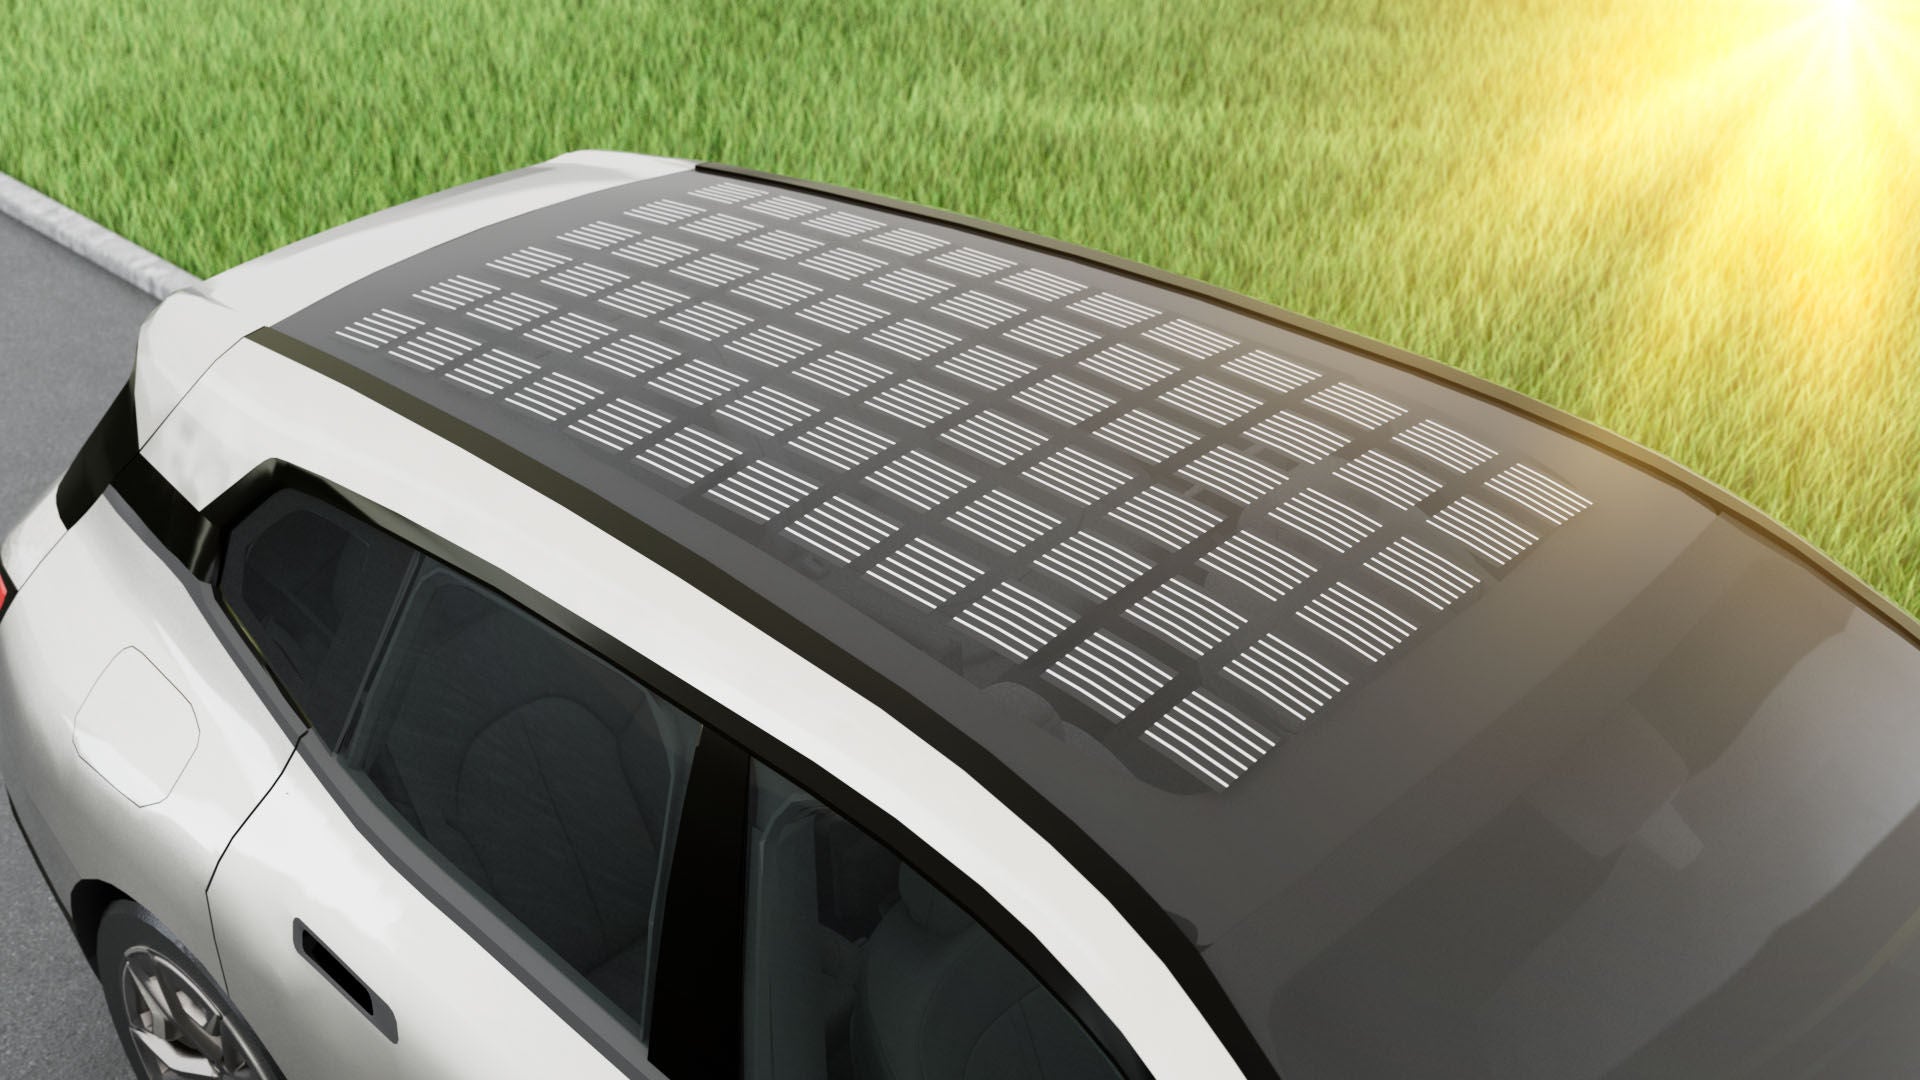 Solarzellen im Fahrzeugdach